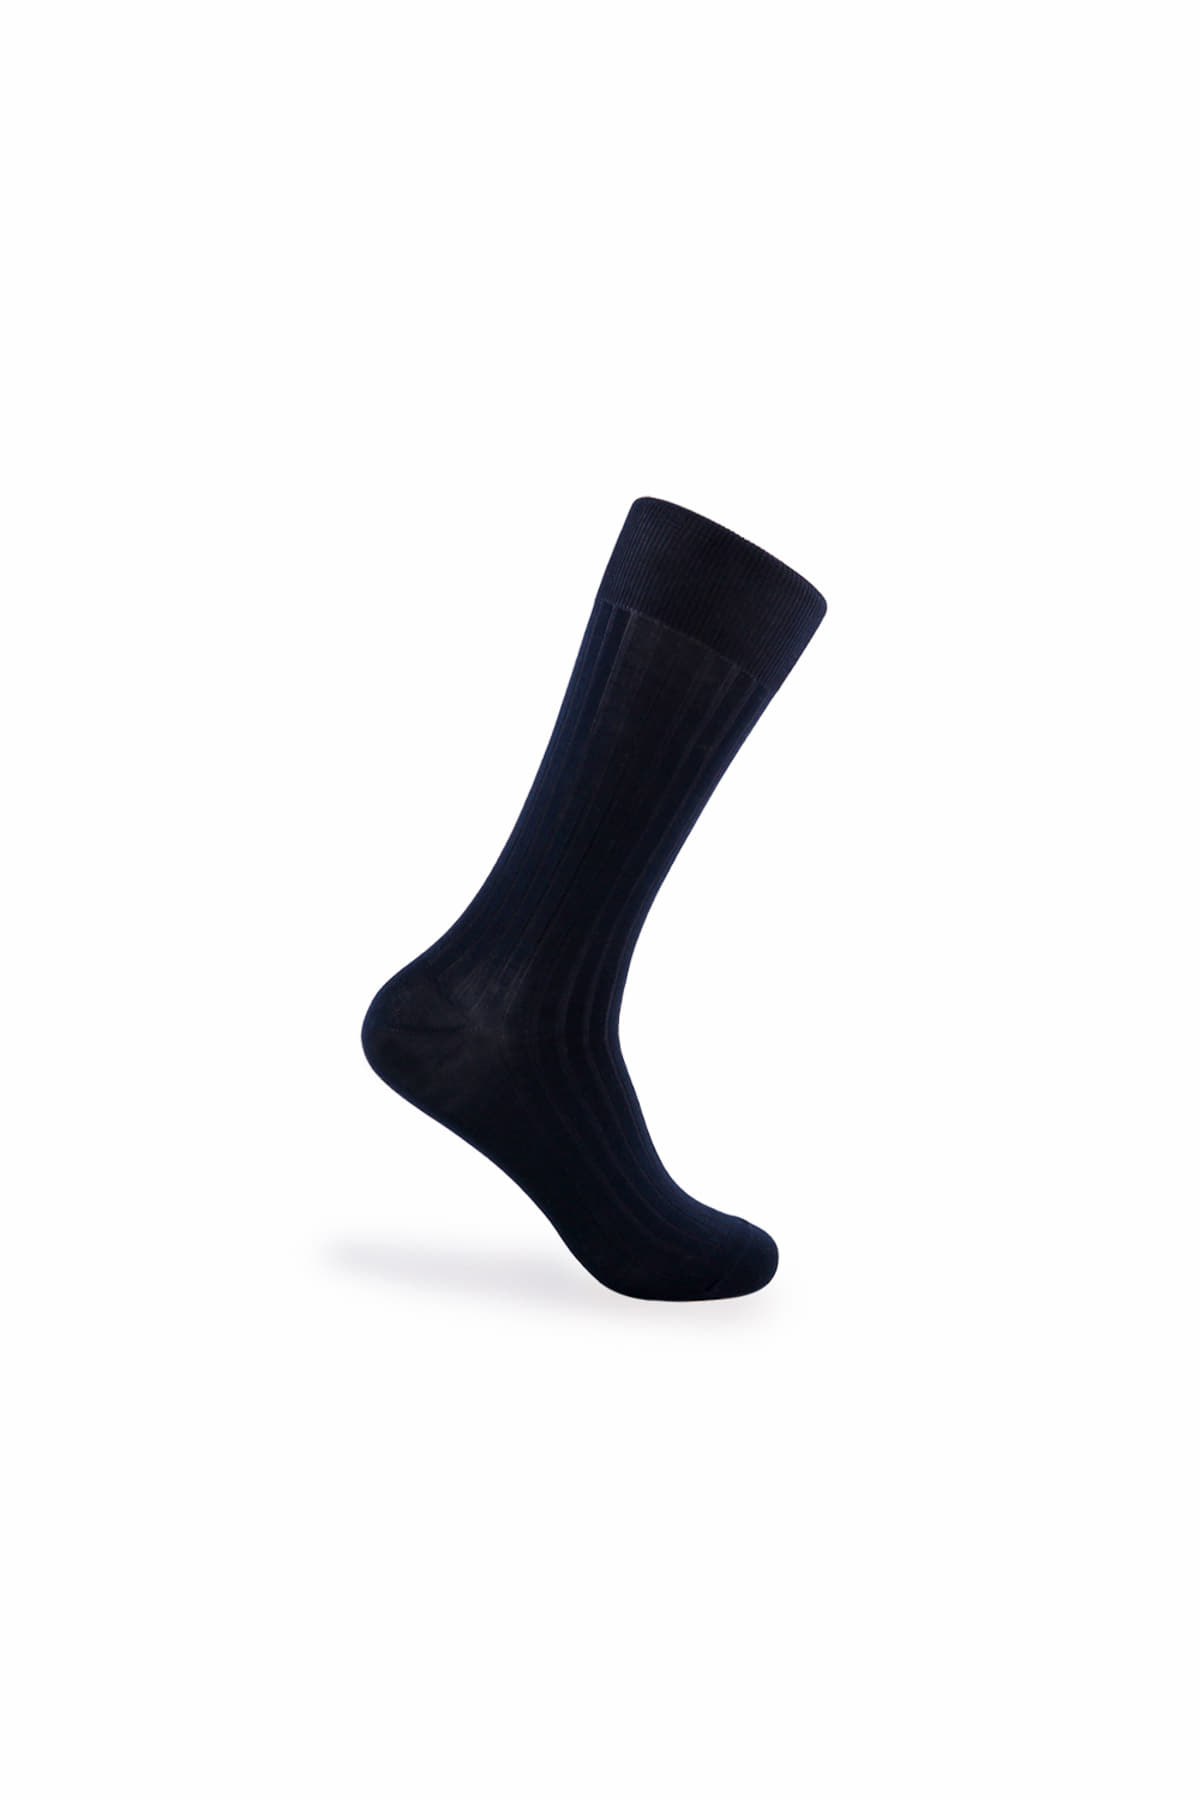 [VOTTA] Rib Socks - Navy Blazer